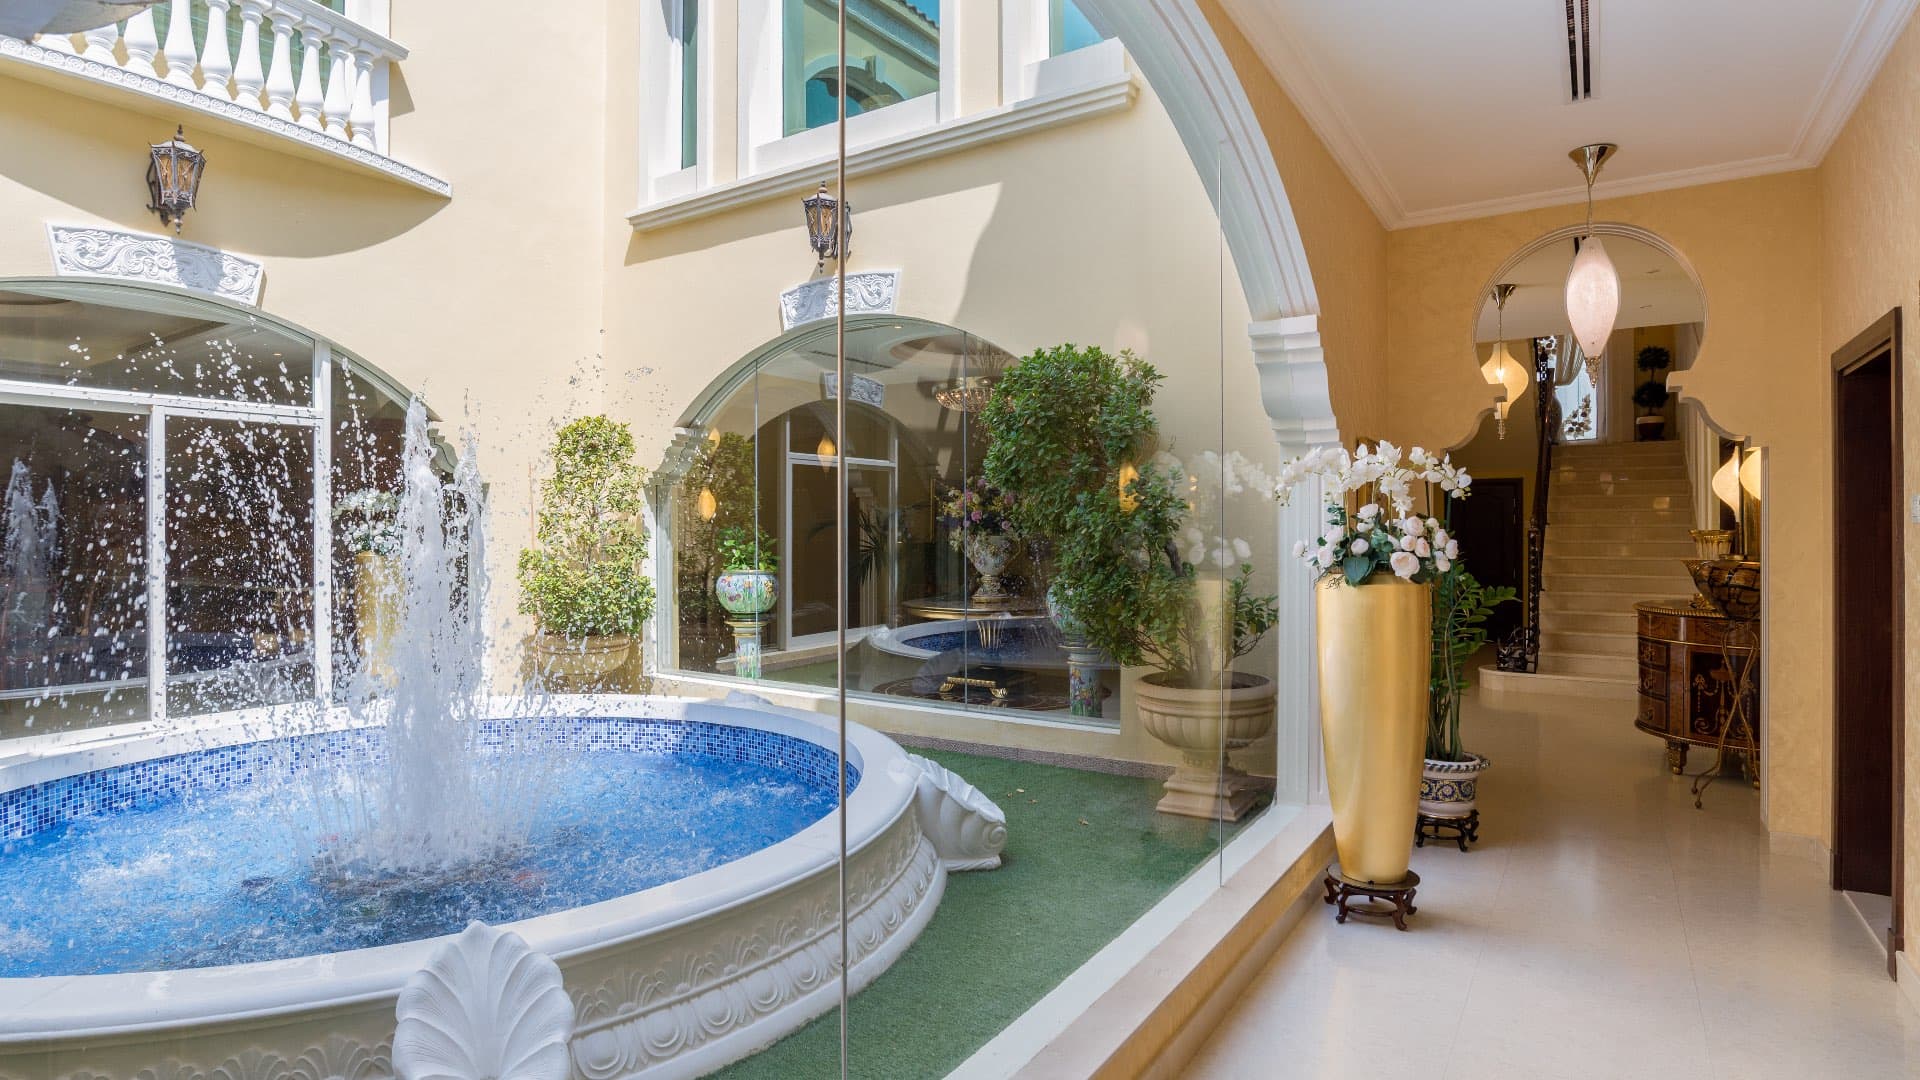 7 Bedroom Villa For Rent Al Barsha 3 Lp08020 26d2e05ac4e54800.jpg